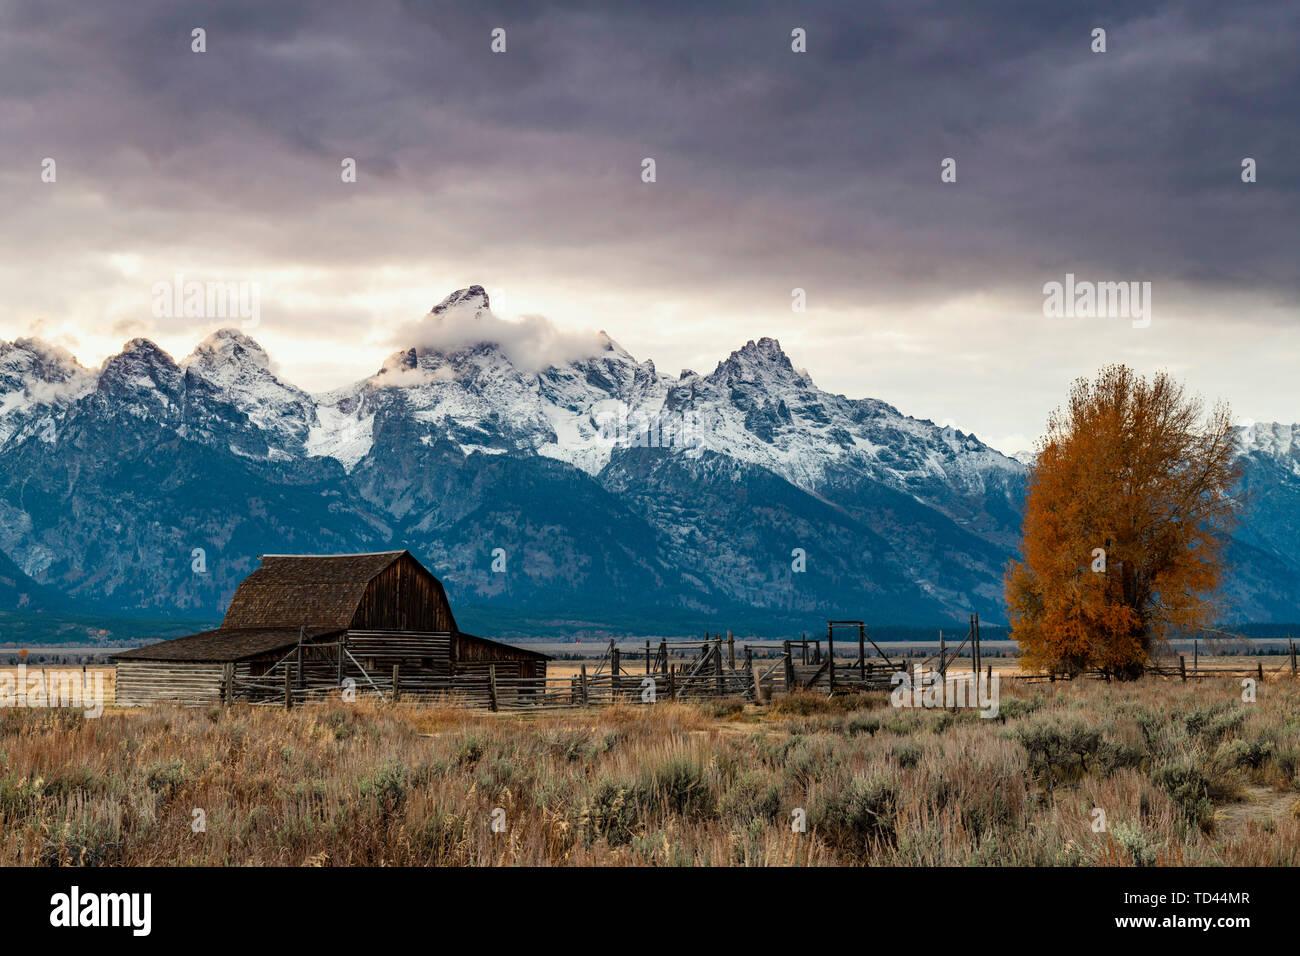 Mormon Zeile und Teton Range, Grand Teton National Park, Wyoming, Vereinigte Staaten von Amerika, Nordamerika Stockfoto